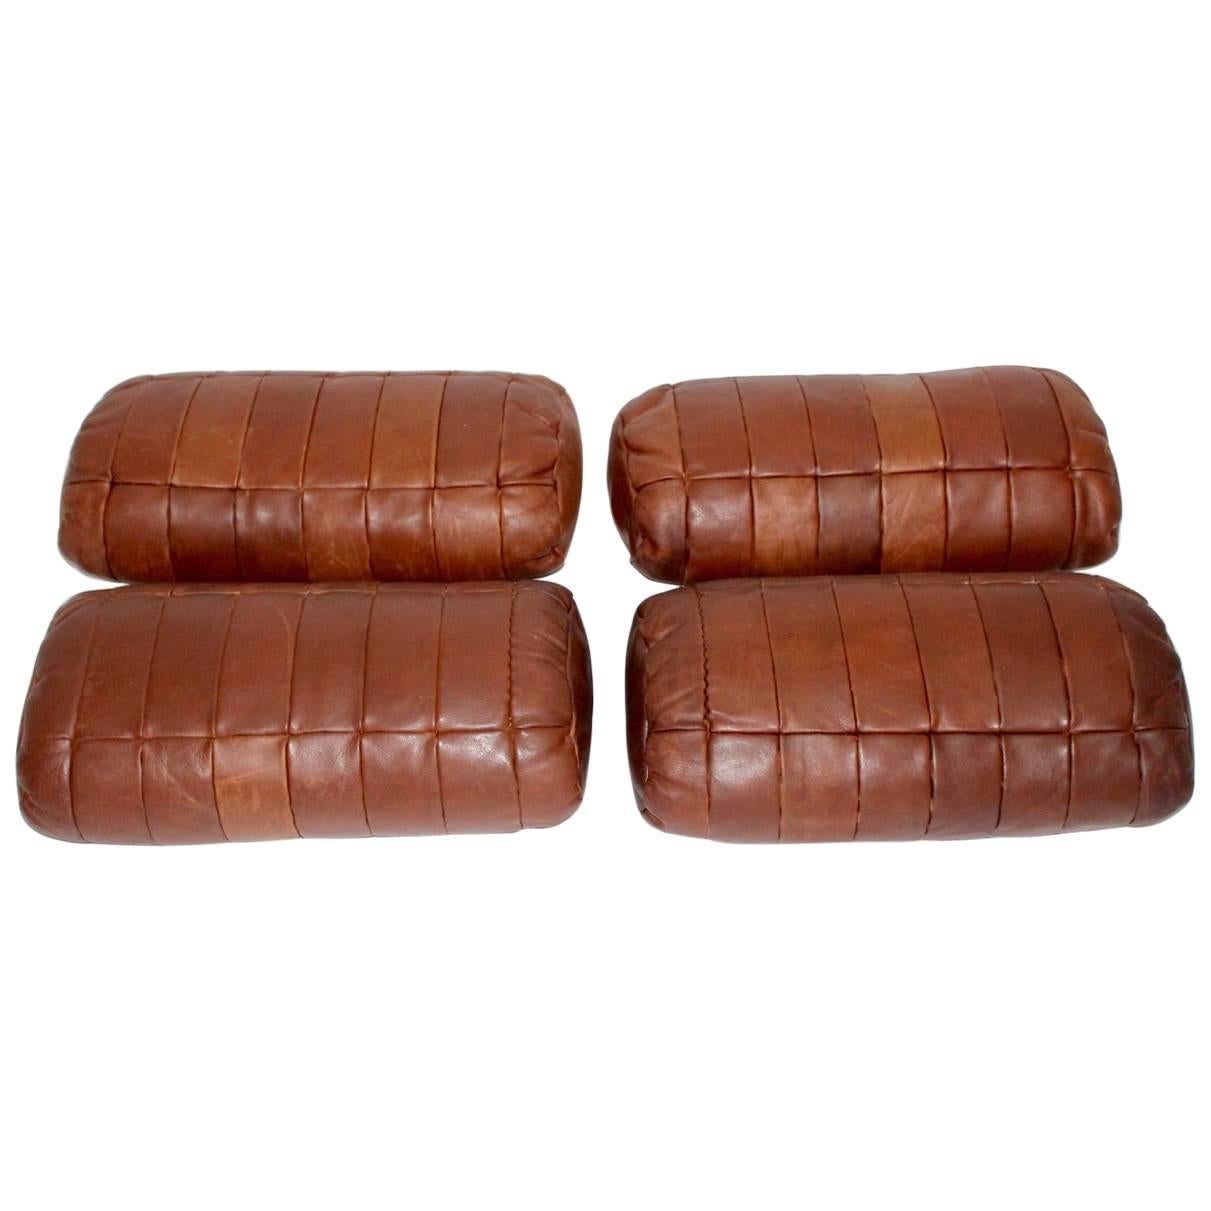  De Sede Cognac Leather Pillows, 1970s, Switzerland Set of Four